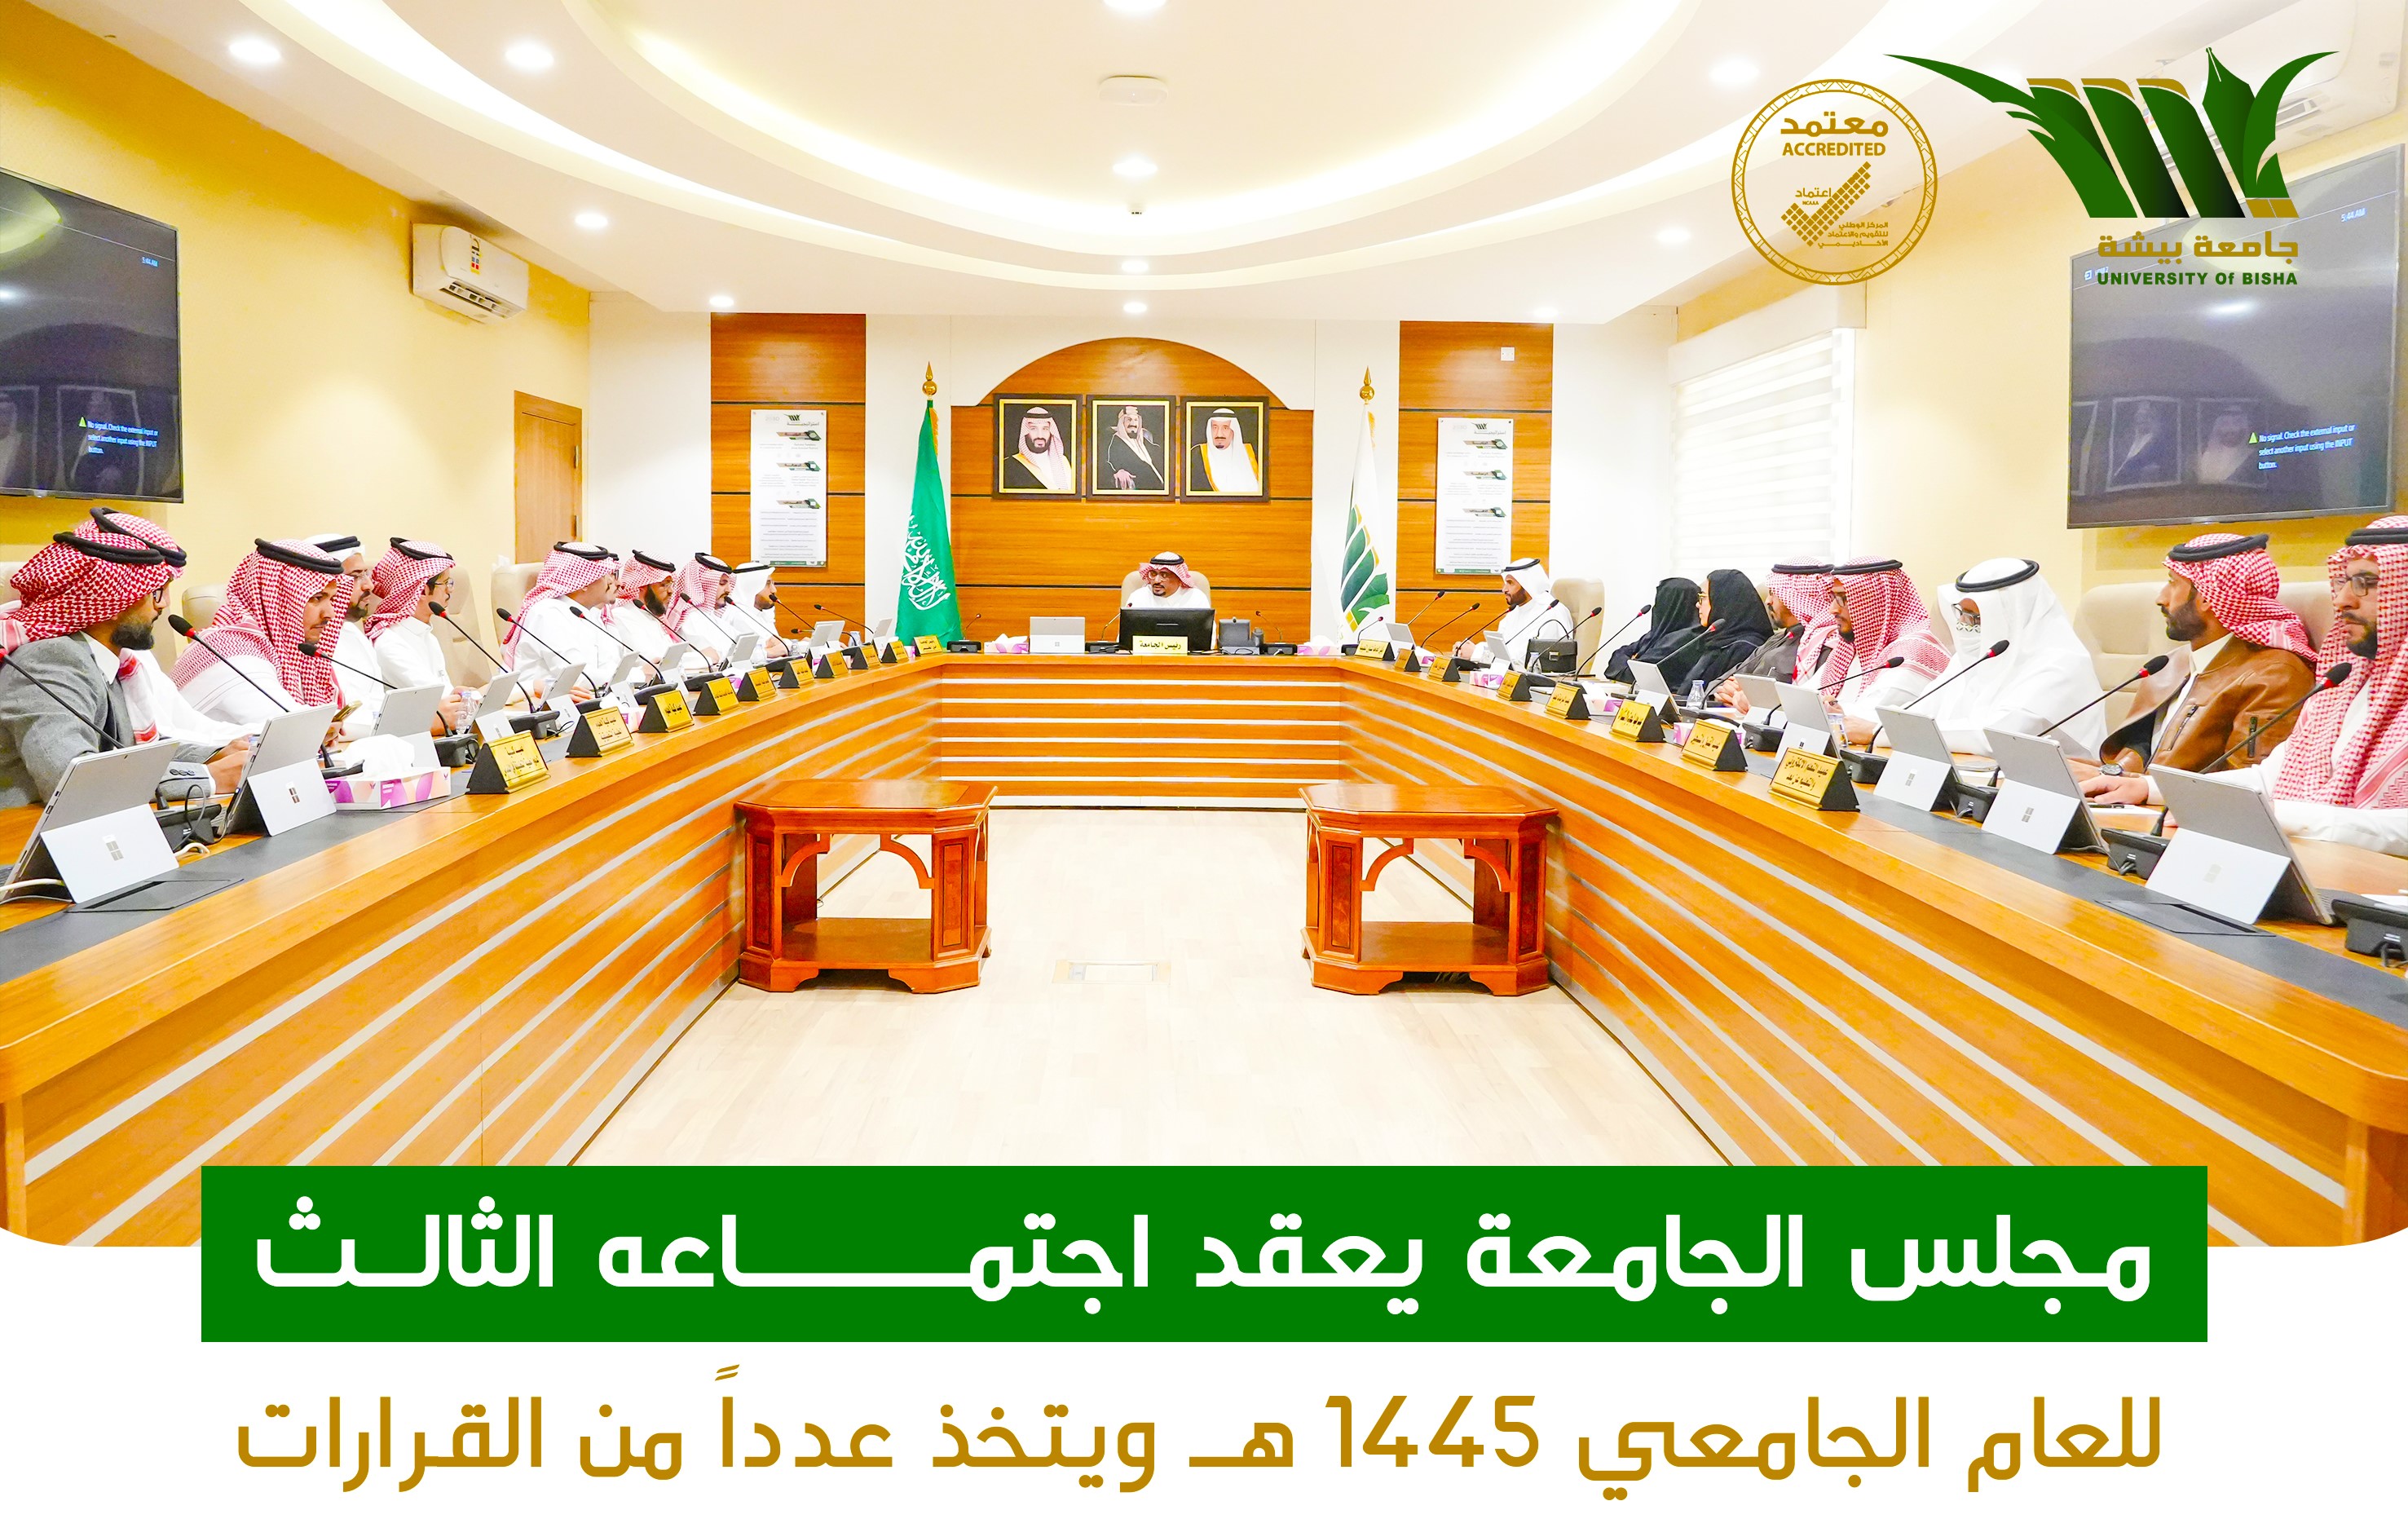 مجلس الجامعة يعقد اجتماعه الثالث للعام الجامعي 1445 هـ ويتخذ عدداً من القرارات 